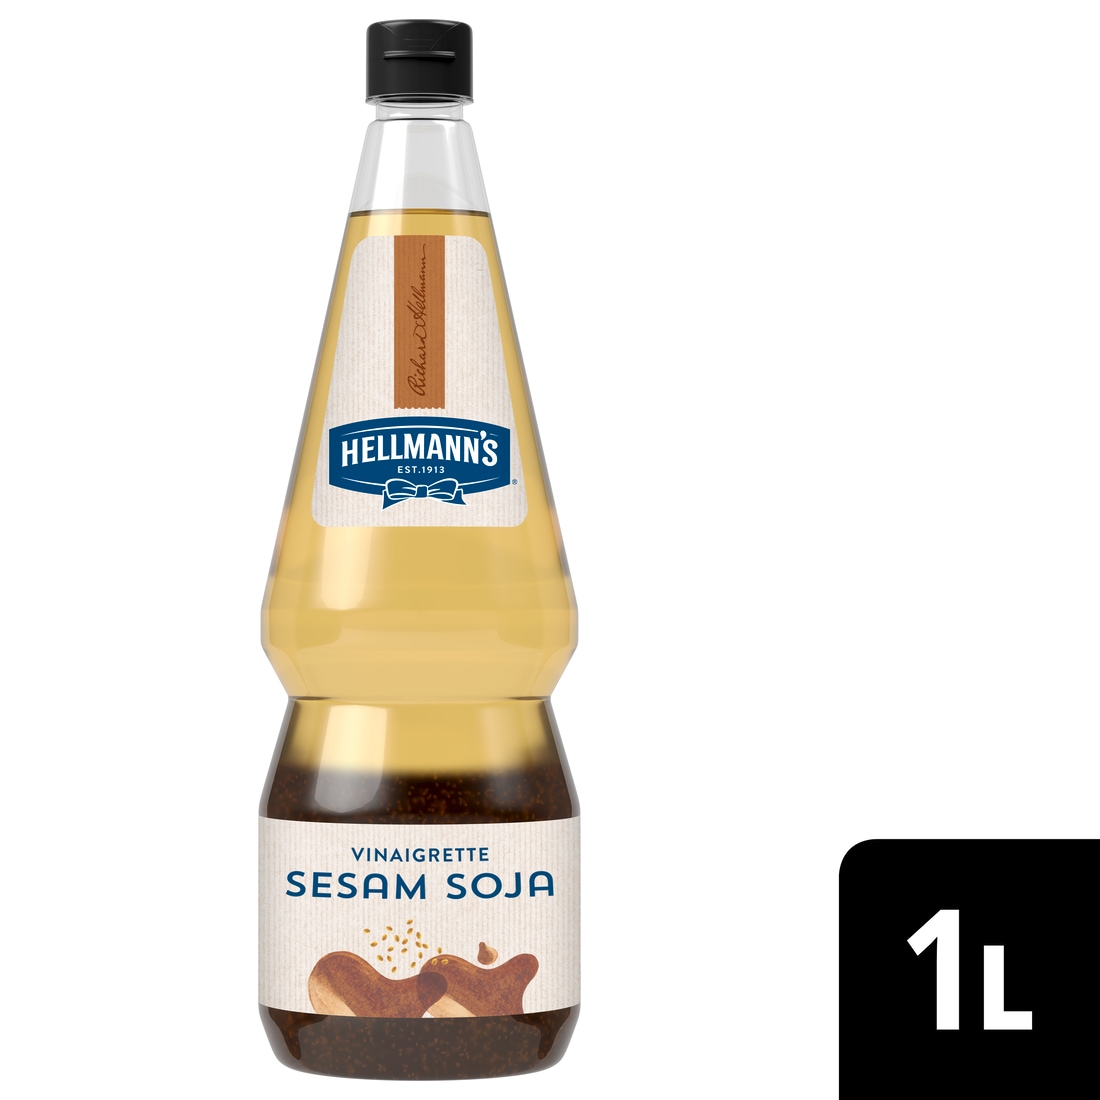 Hellmann's Sesam Soya Vinaigrette 1 L - 